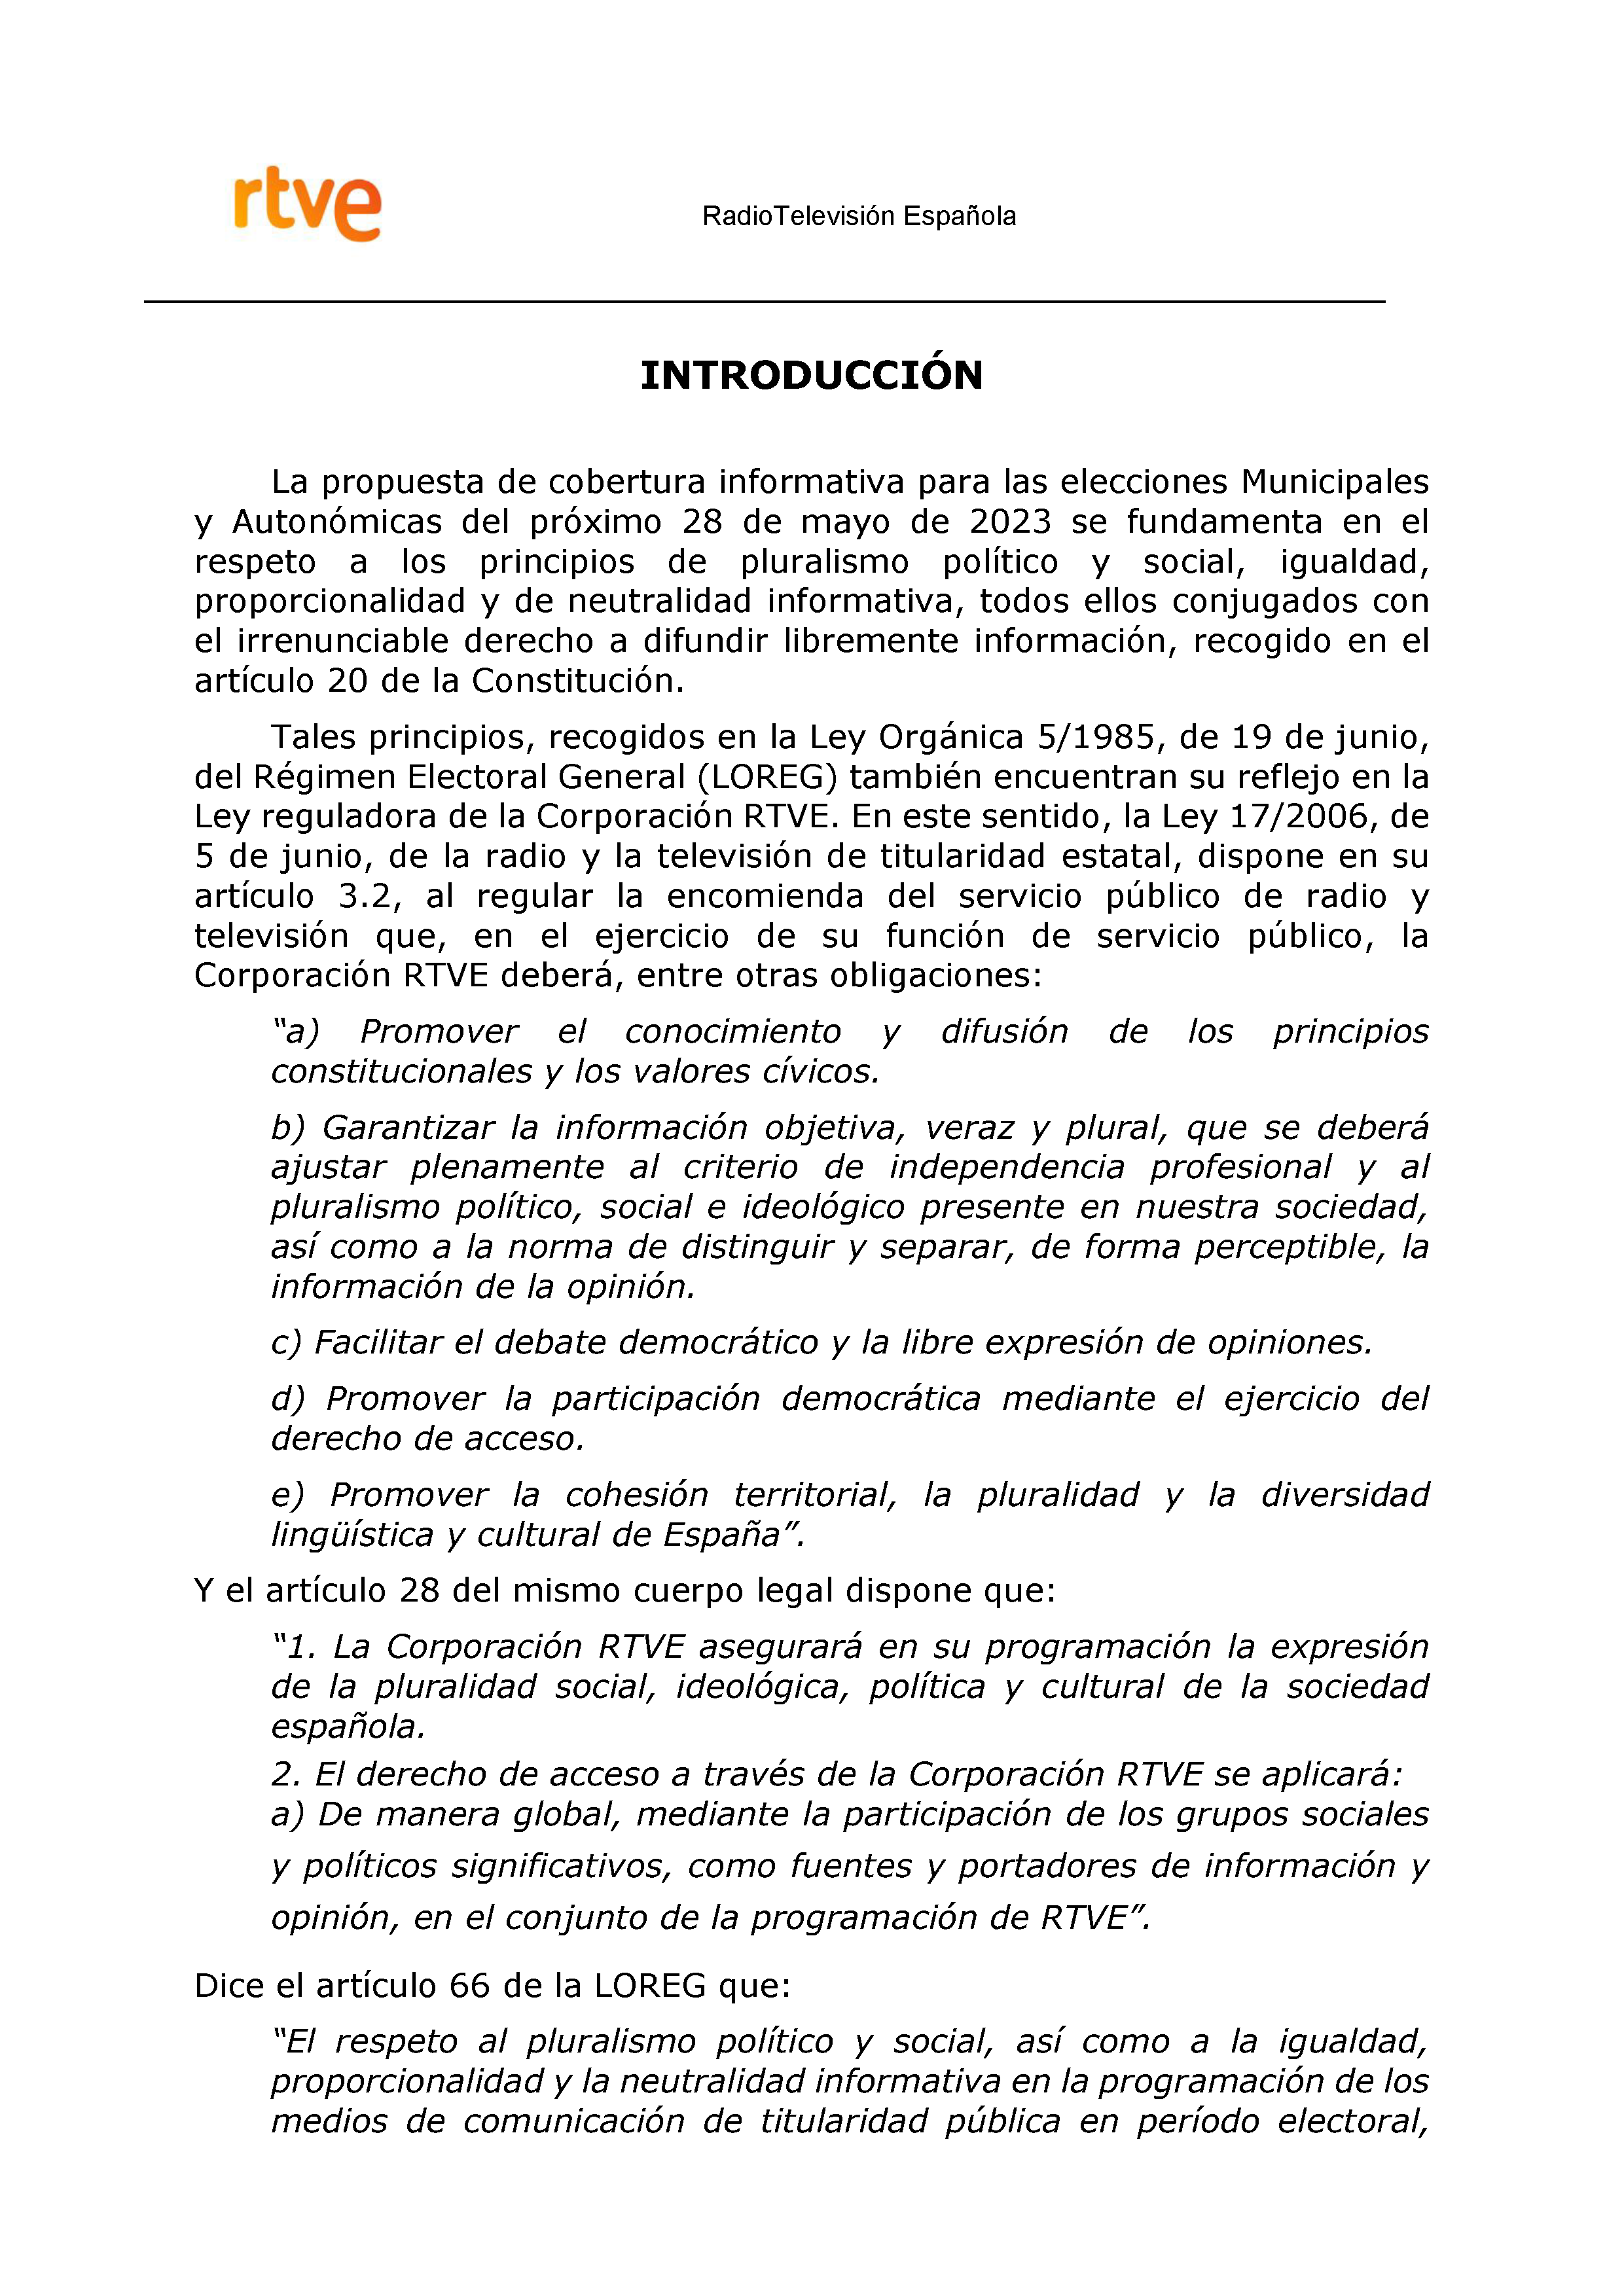 PLAN DE COBERTURA INFORMATIVA RTVE EN EXTREMADURA Pag 2